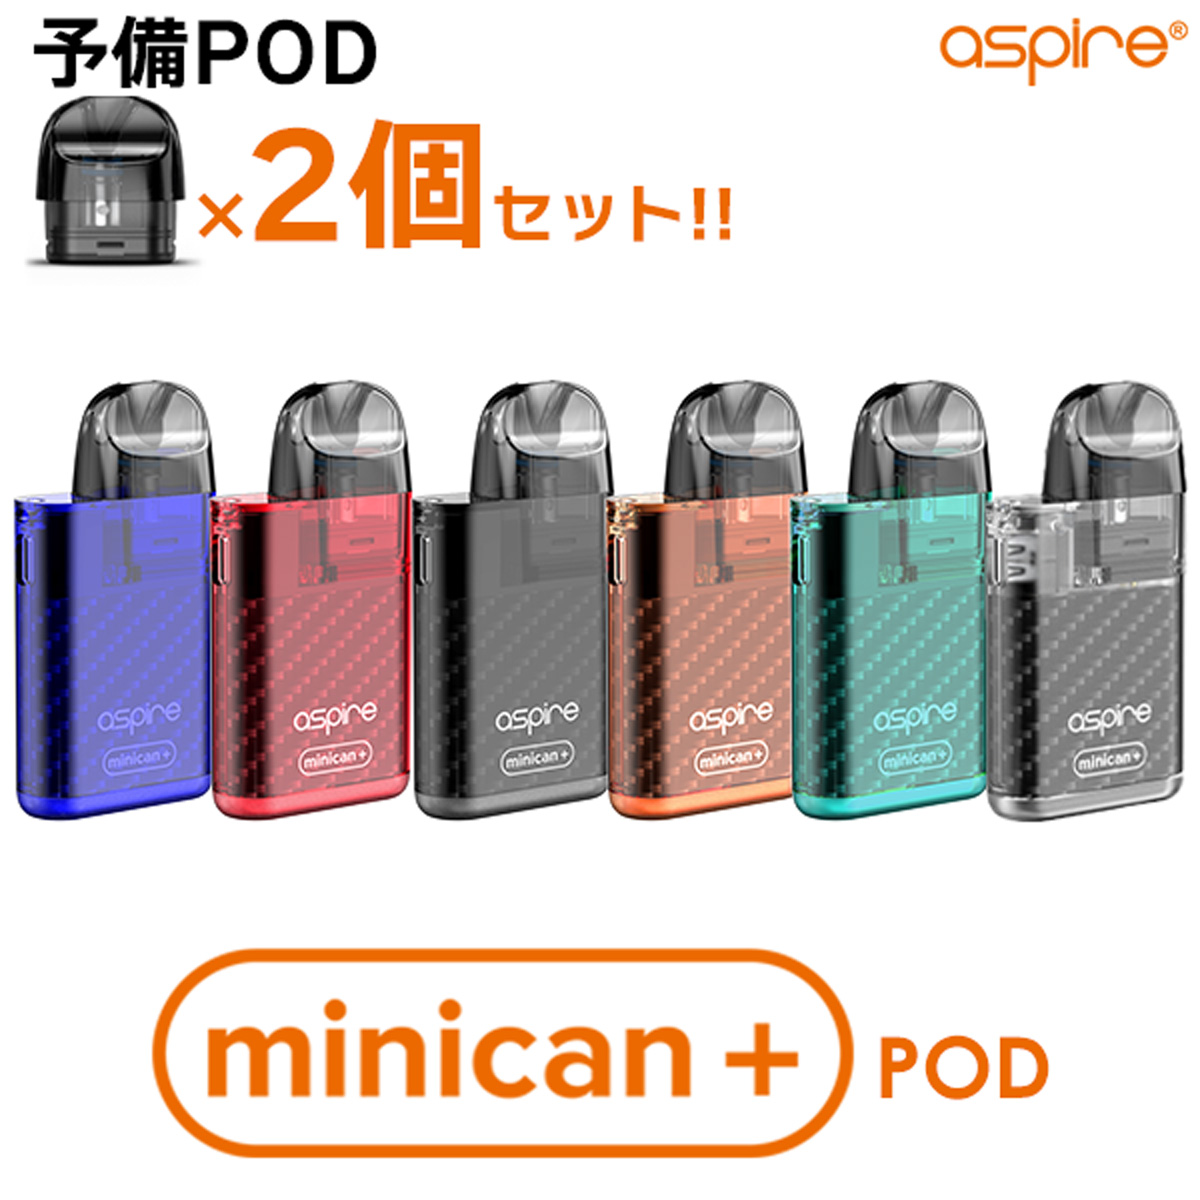  Aspire Minican  POD アスパイア ミニカン  ポッド ミニカンプラス Minican Plus 電子タバコ vape ベイプ pod pod型 初心者 おすすめ 味重視 コンパクト メール便無料